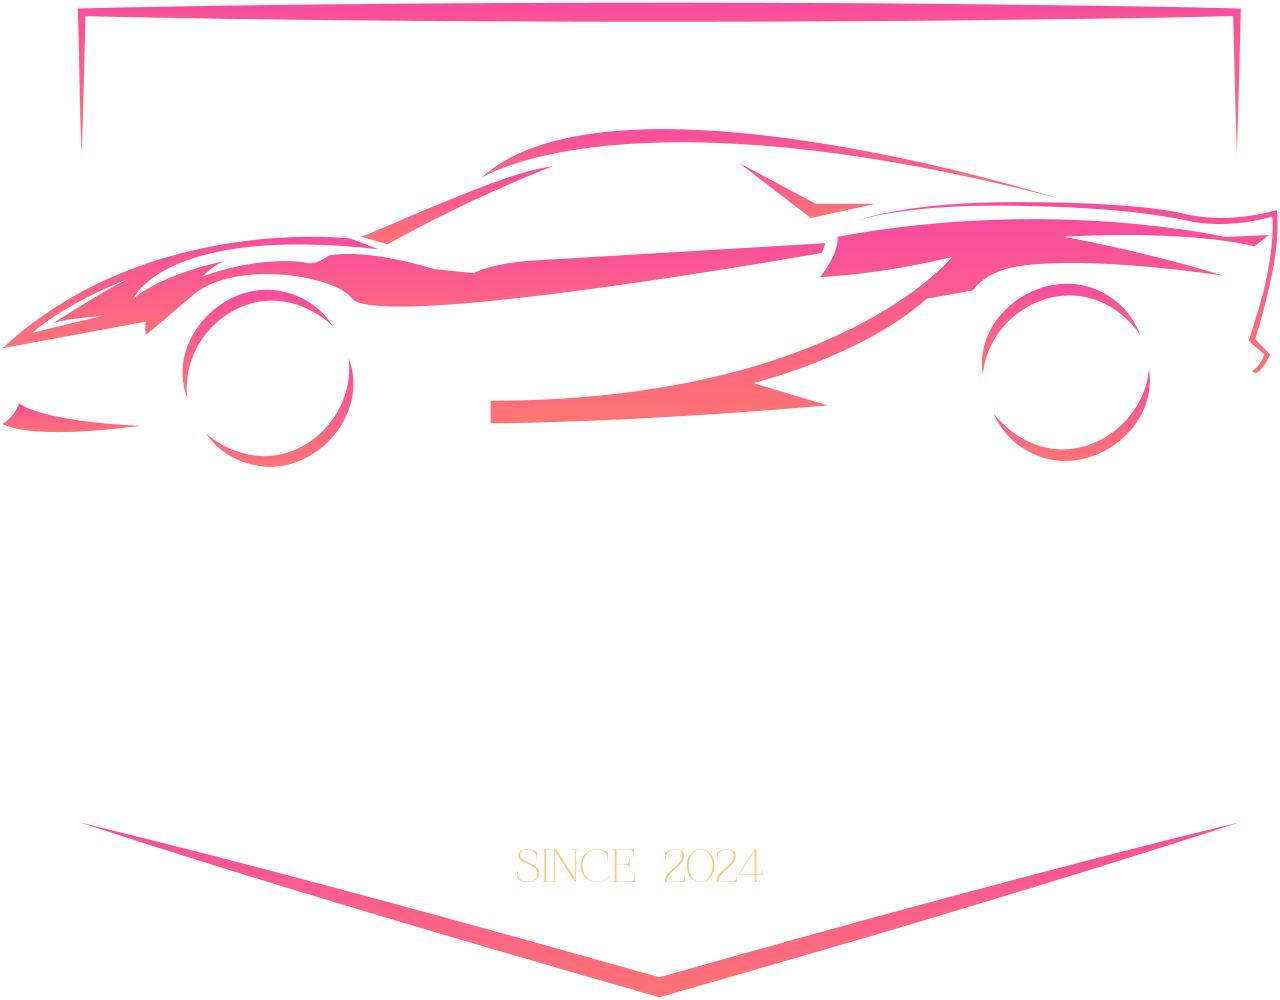 Anthony Detailing 's logo